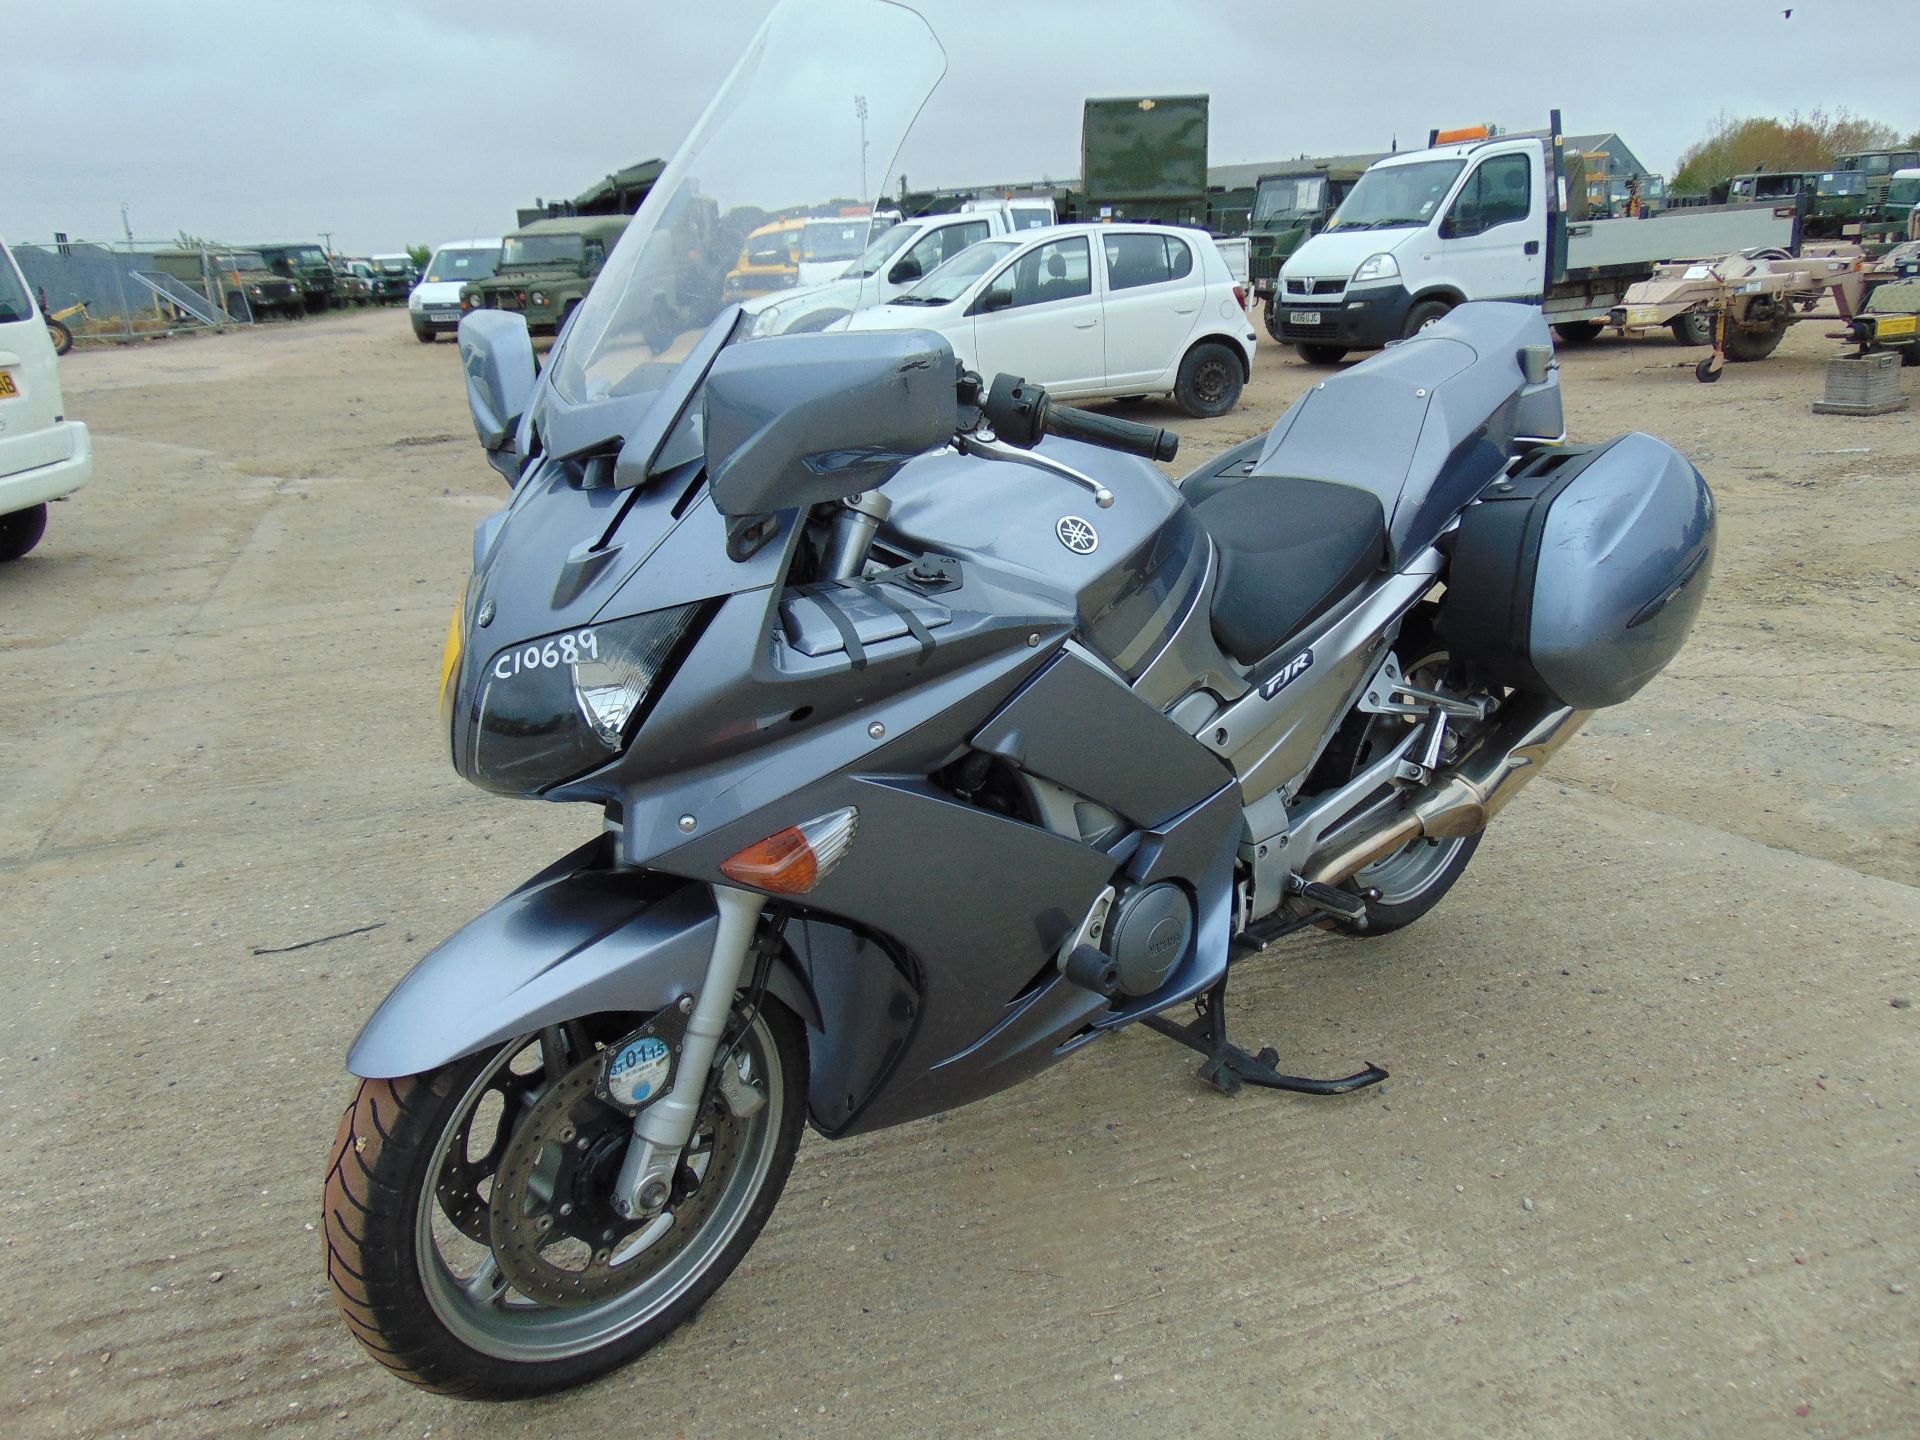 2008 Yamaha FJR1300 Motorbike - Image 3 of 15